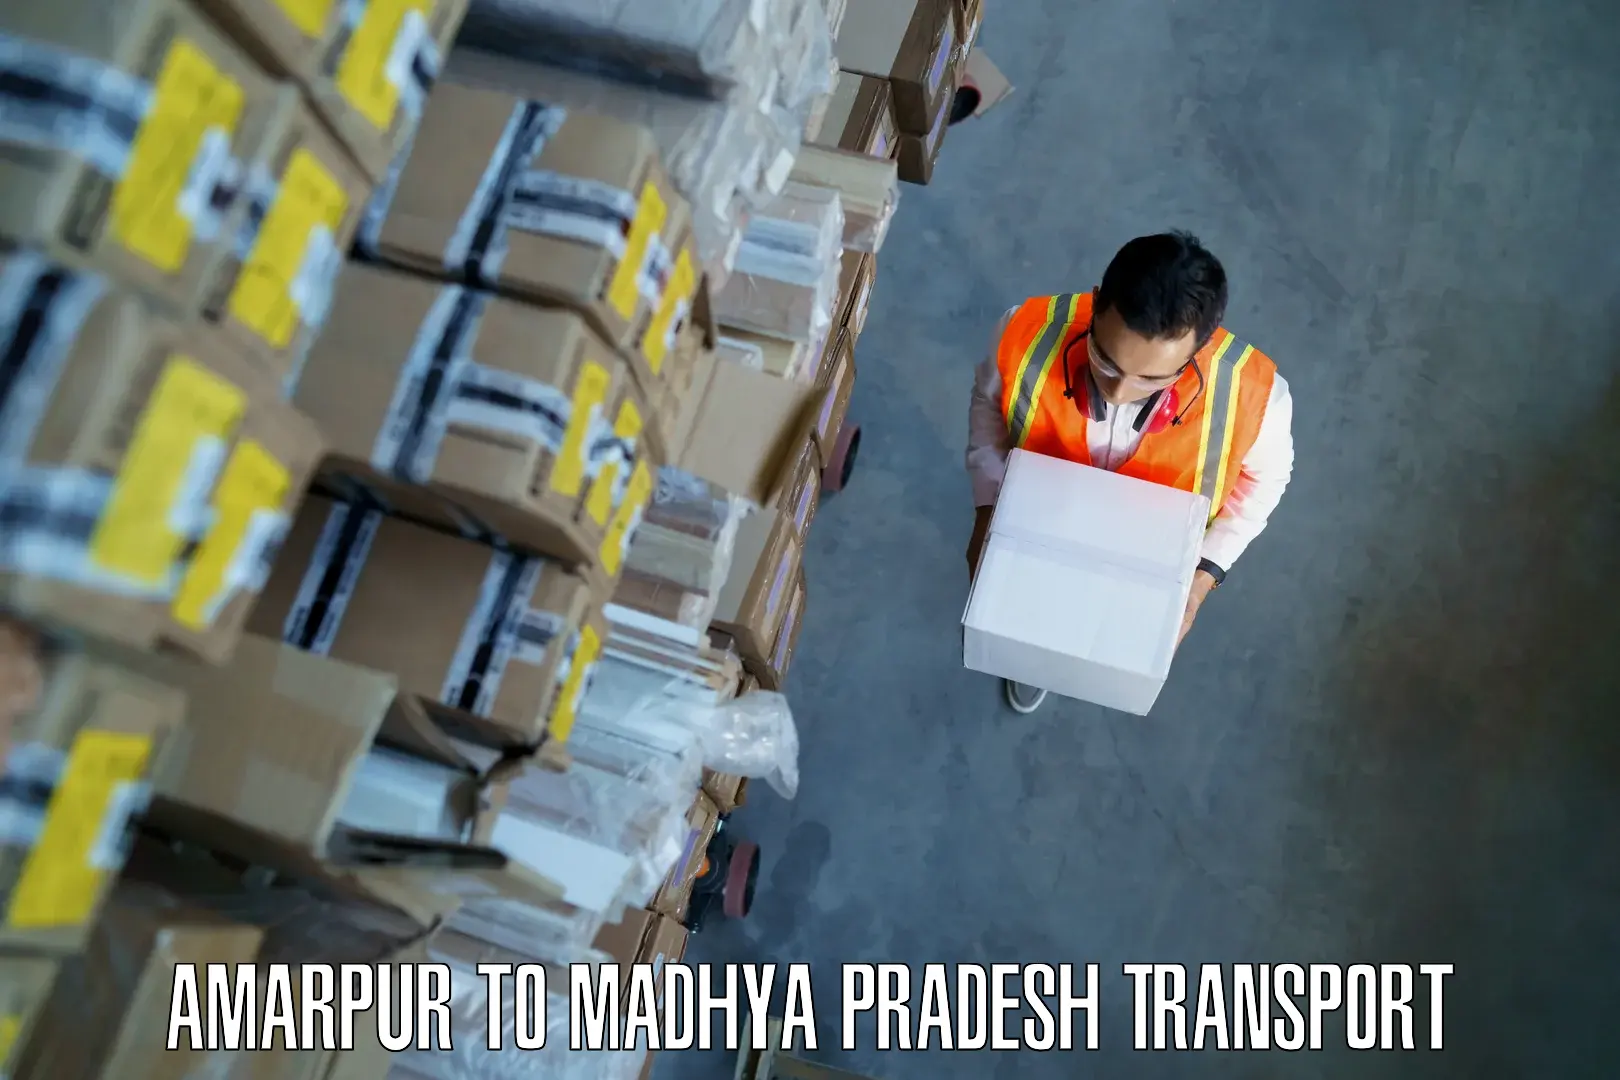 Pick up transport service Amarpur to Multai